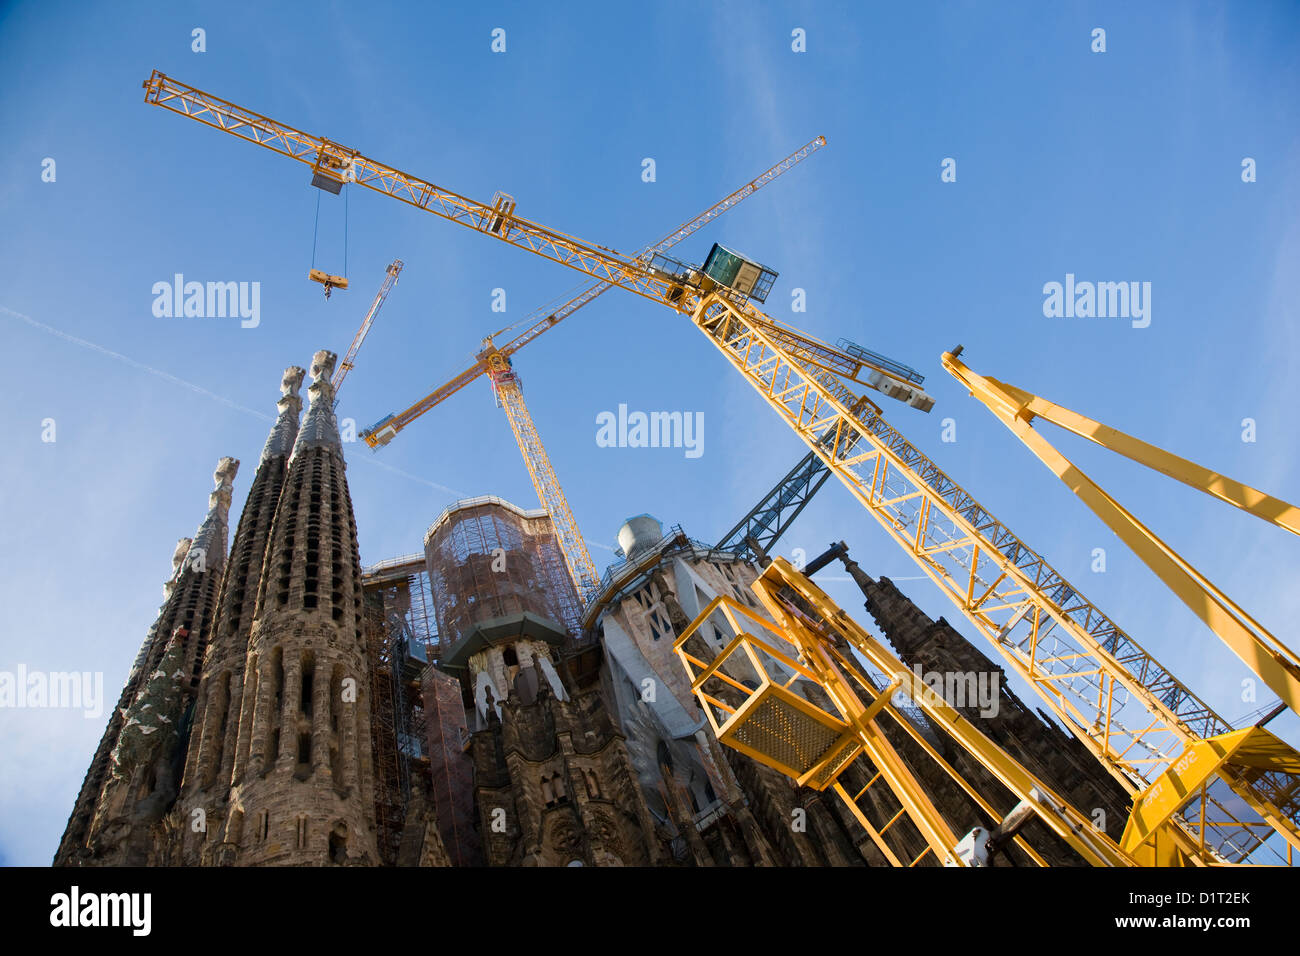 Cranes outside the Sagrada Familia in Barcelona, Spain Stock Photo